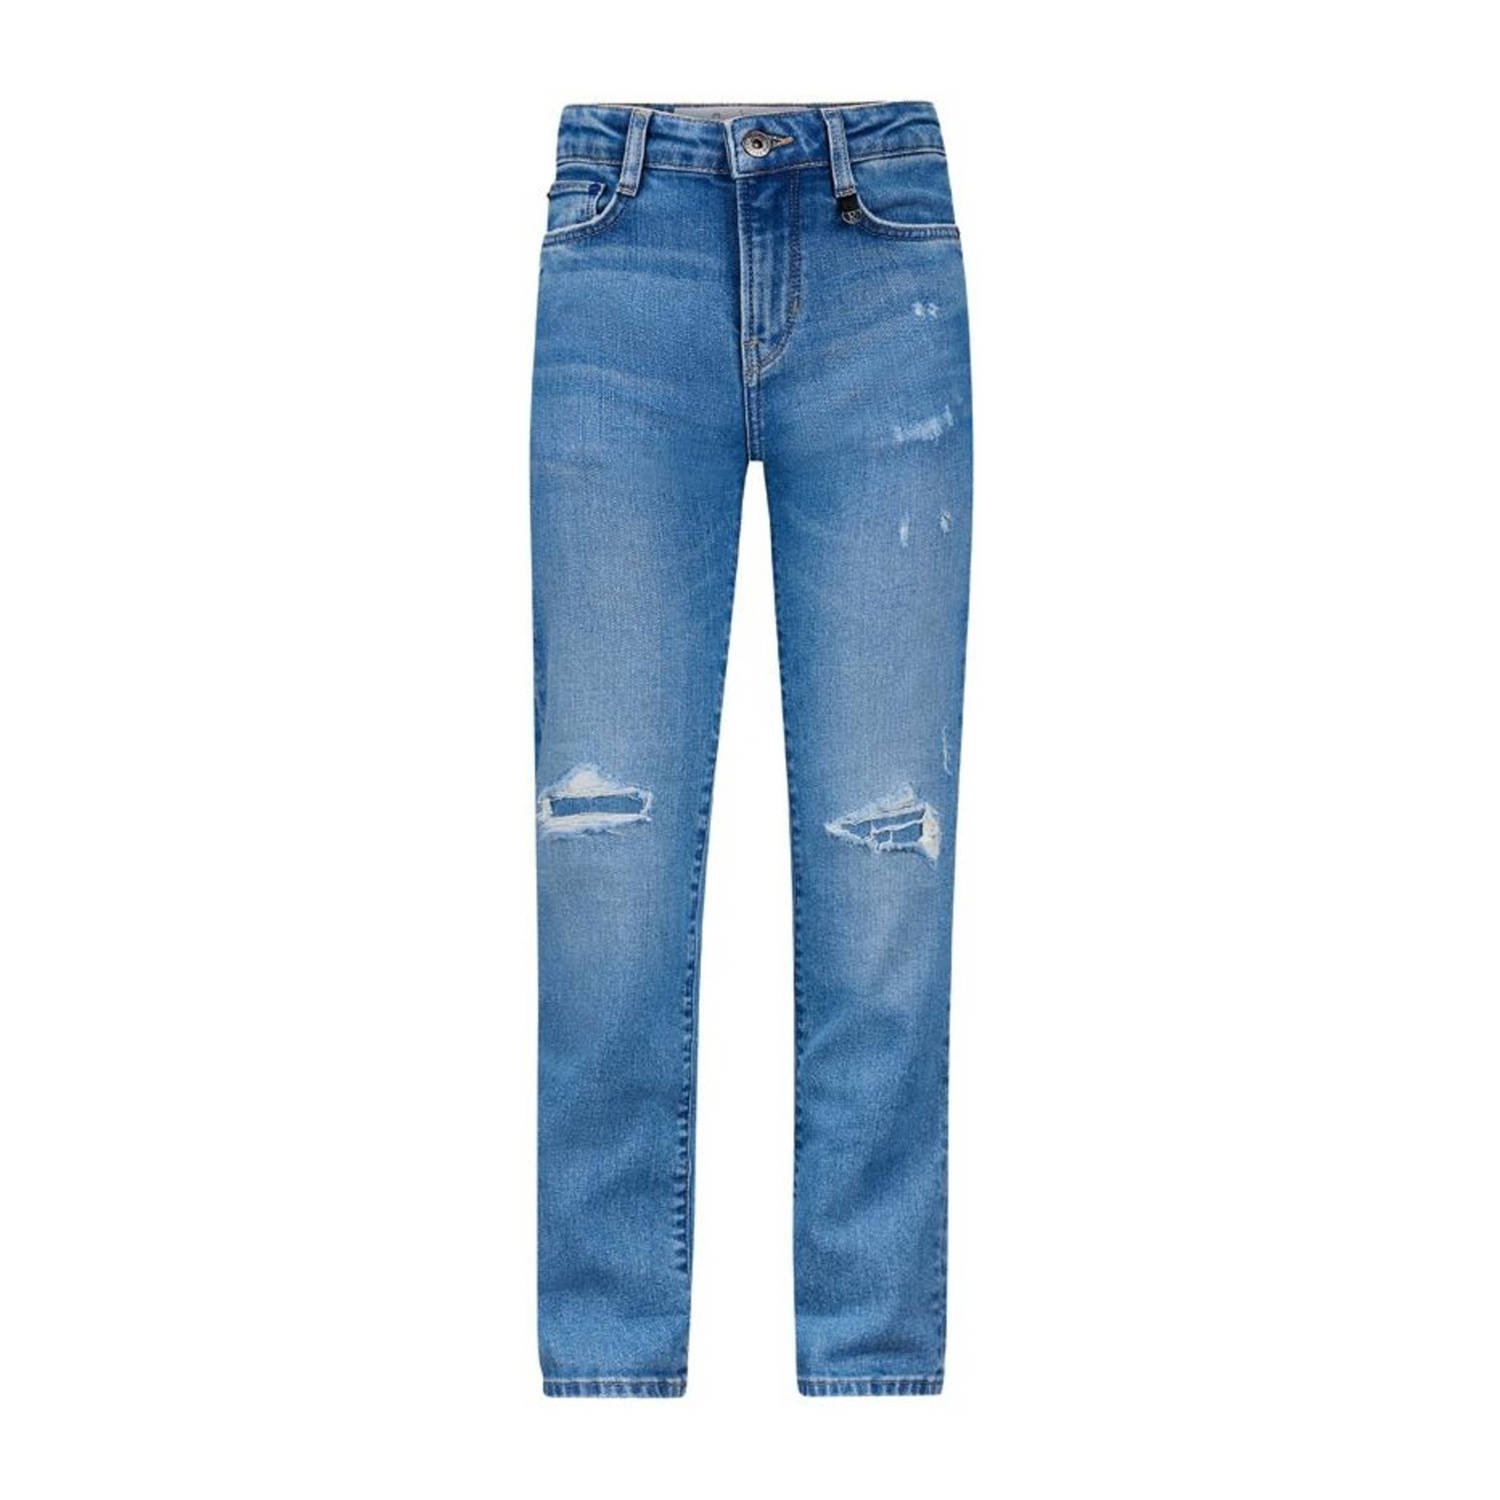 Retour Jeans loose fit jeans Glennis Vintage light blue denim Blauw Meisjes Stretchdenim 116